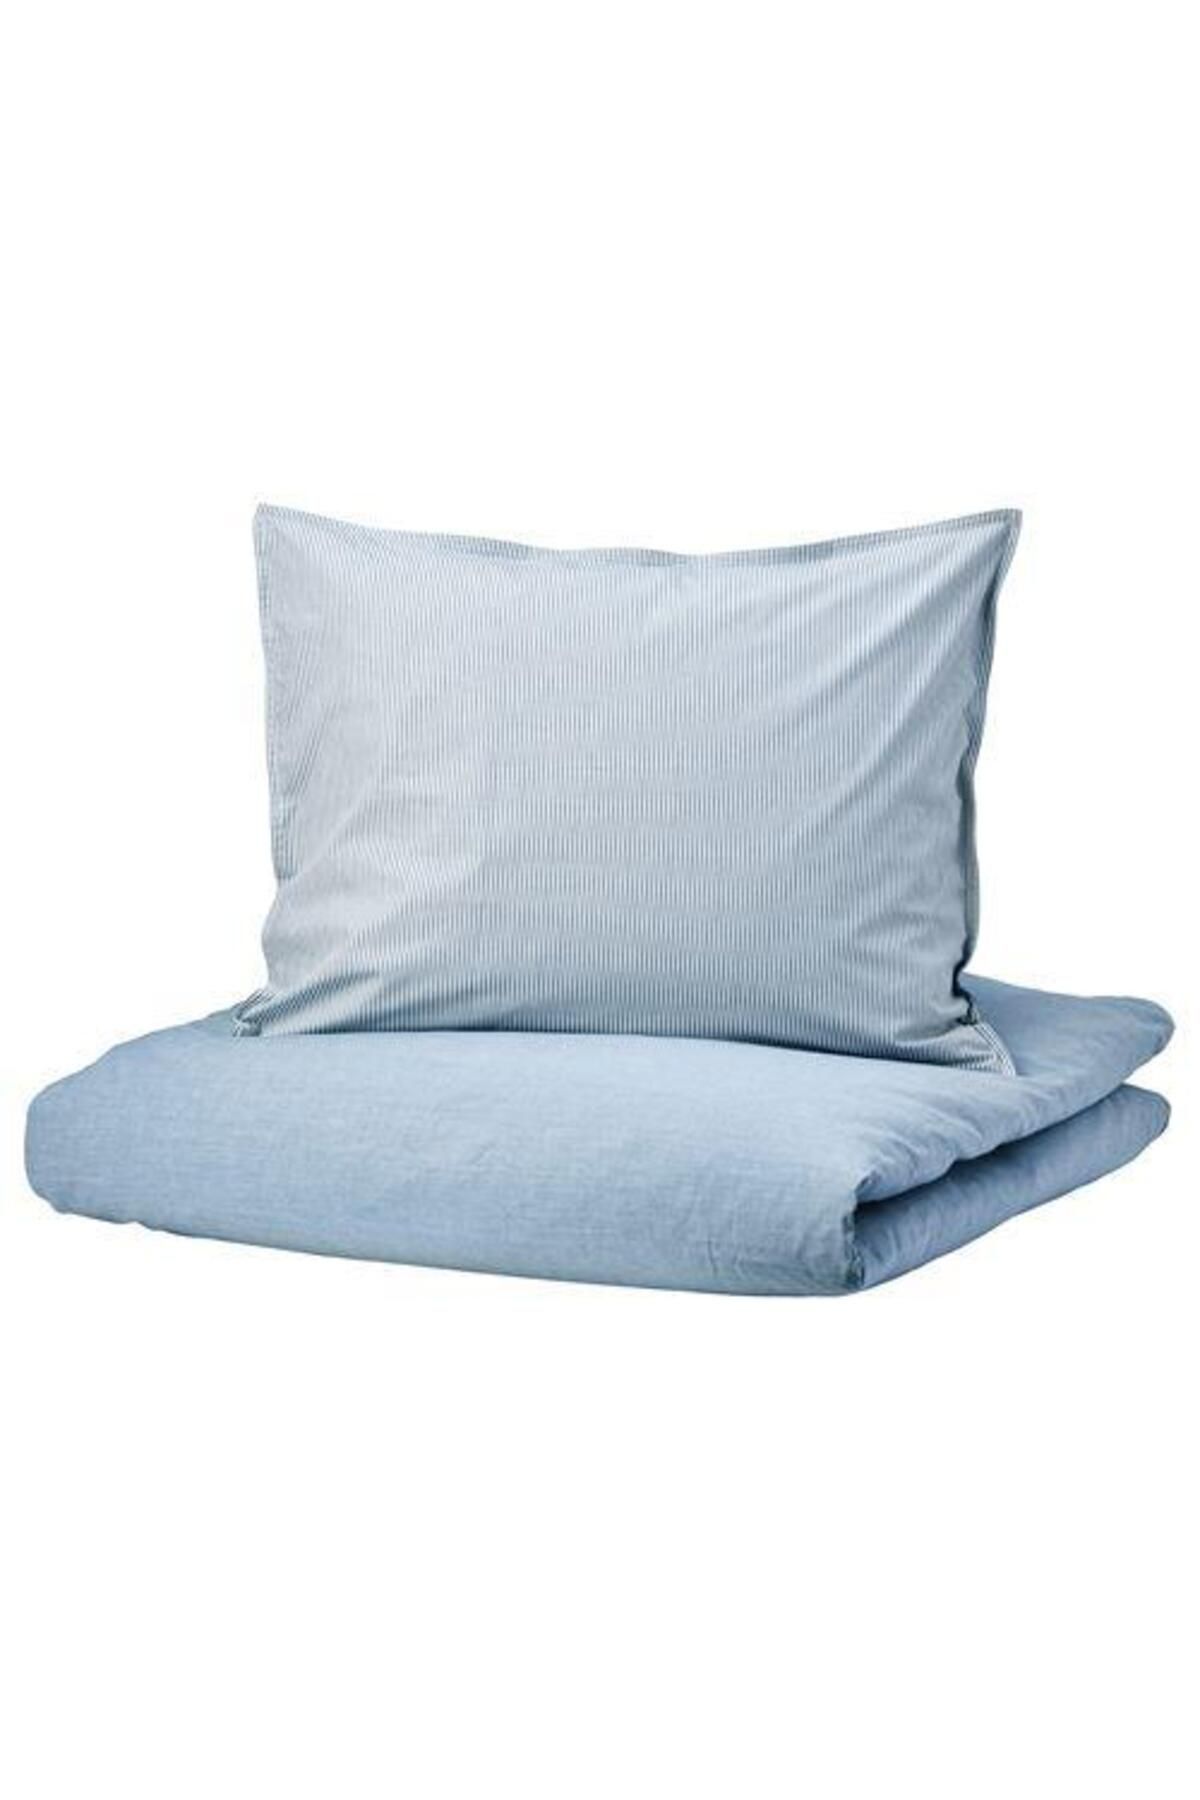 IKEA Çift Kişilik Nevresim Takımı ,meridyendukkan Açık Mavi Renk Çizgili 240x220 Cm Nevresim Takımı